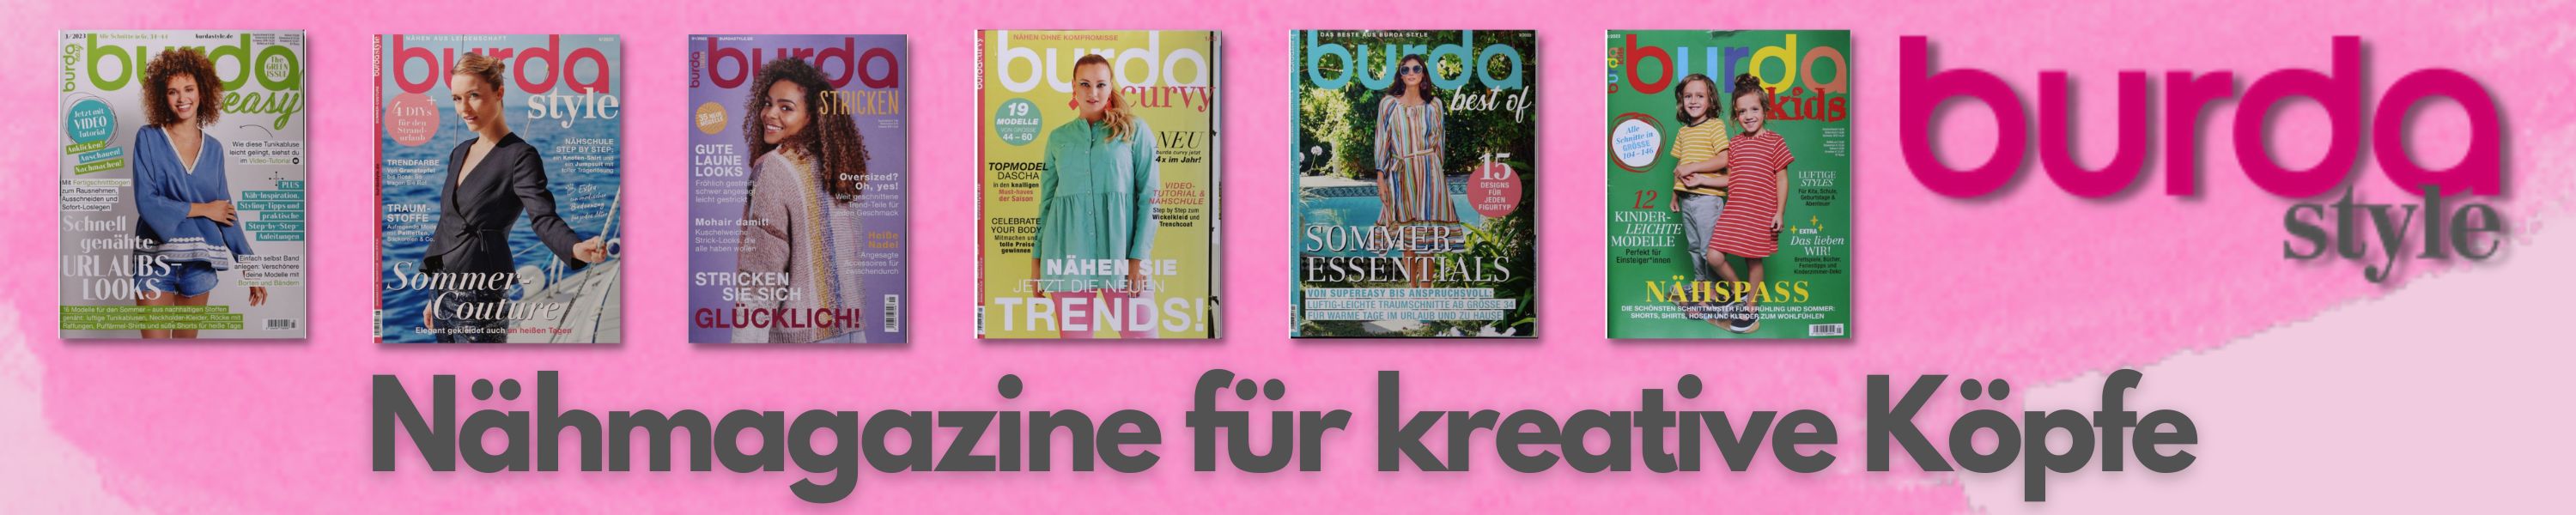 Burda Näh- und Strickmagazine